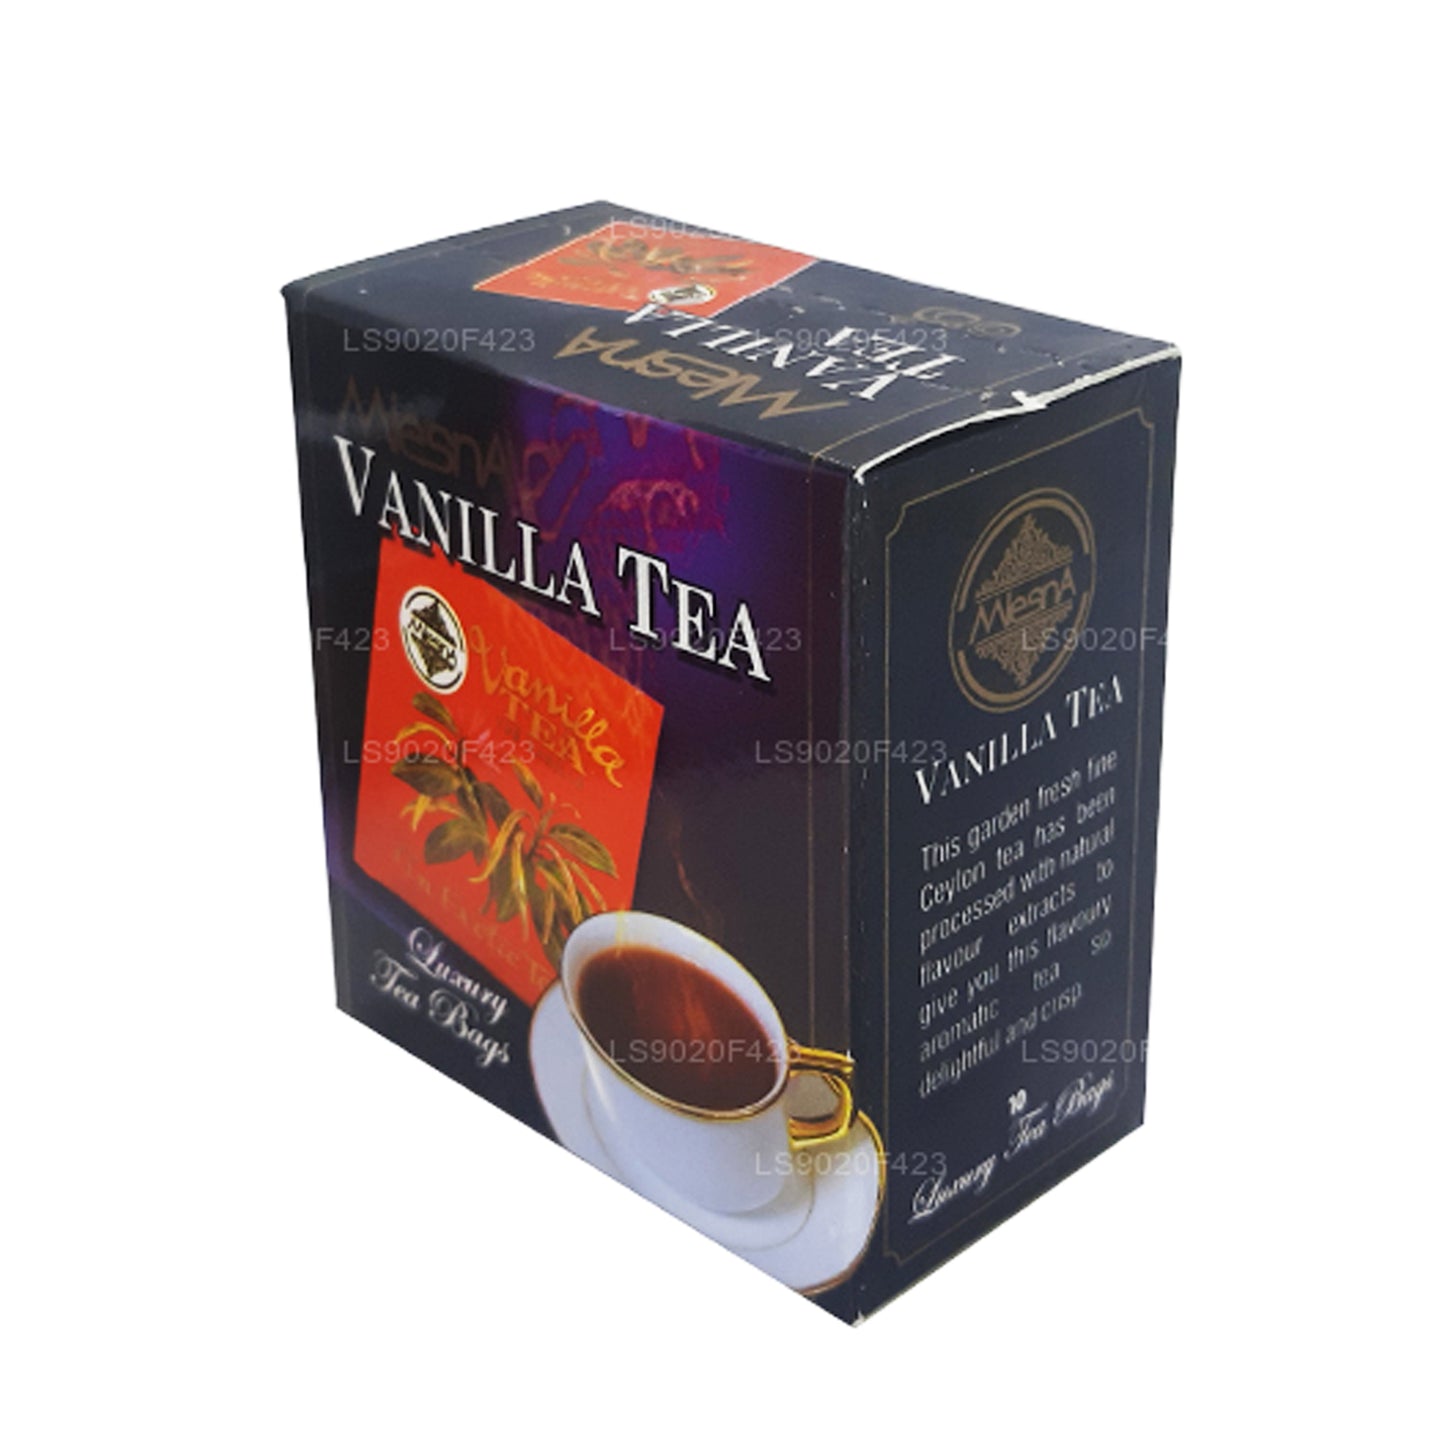 Mlesna Vanilla Tea (20g) 10 Luksus Teposer